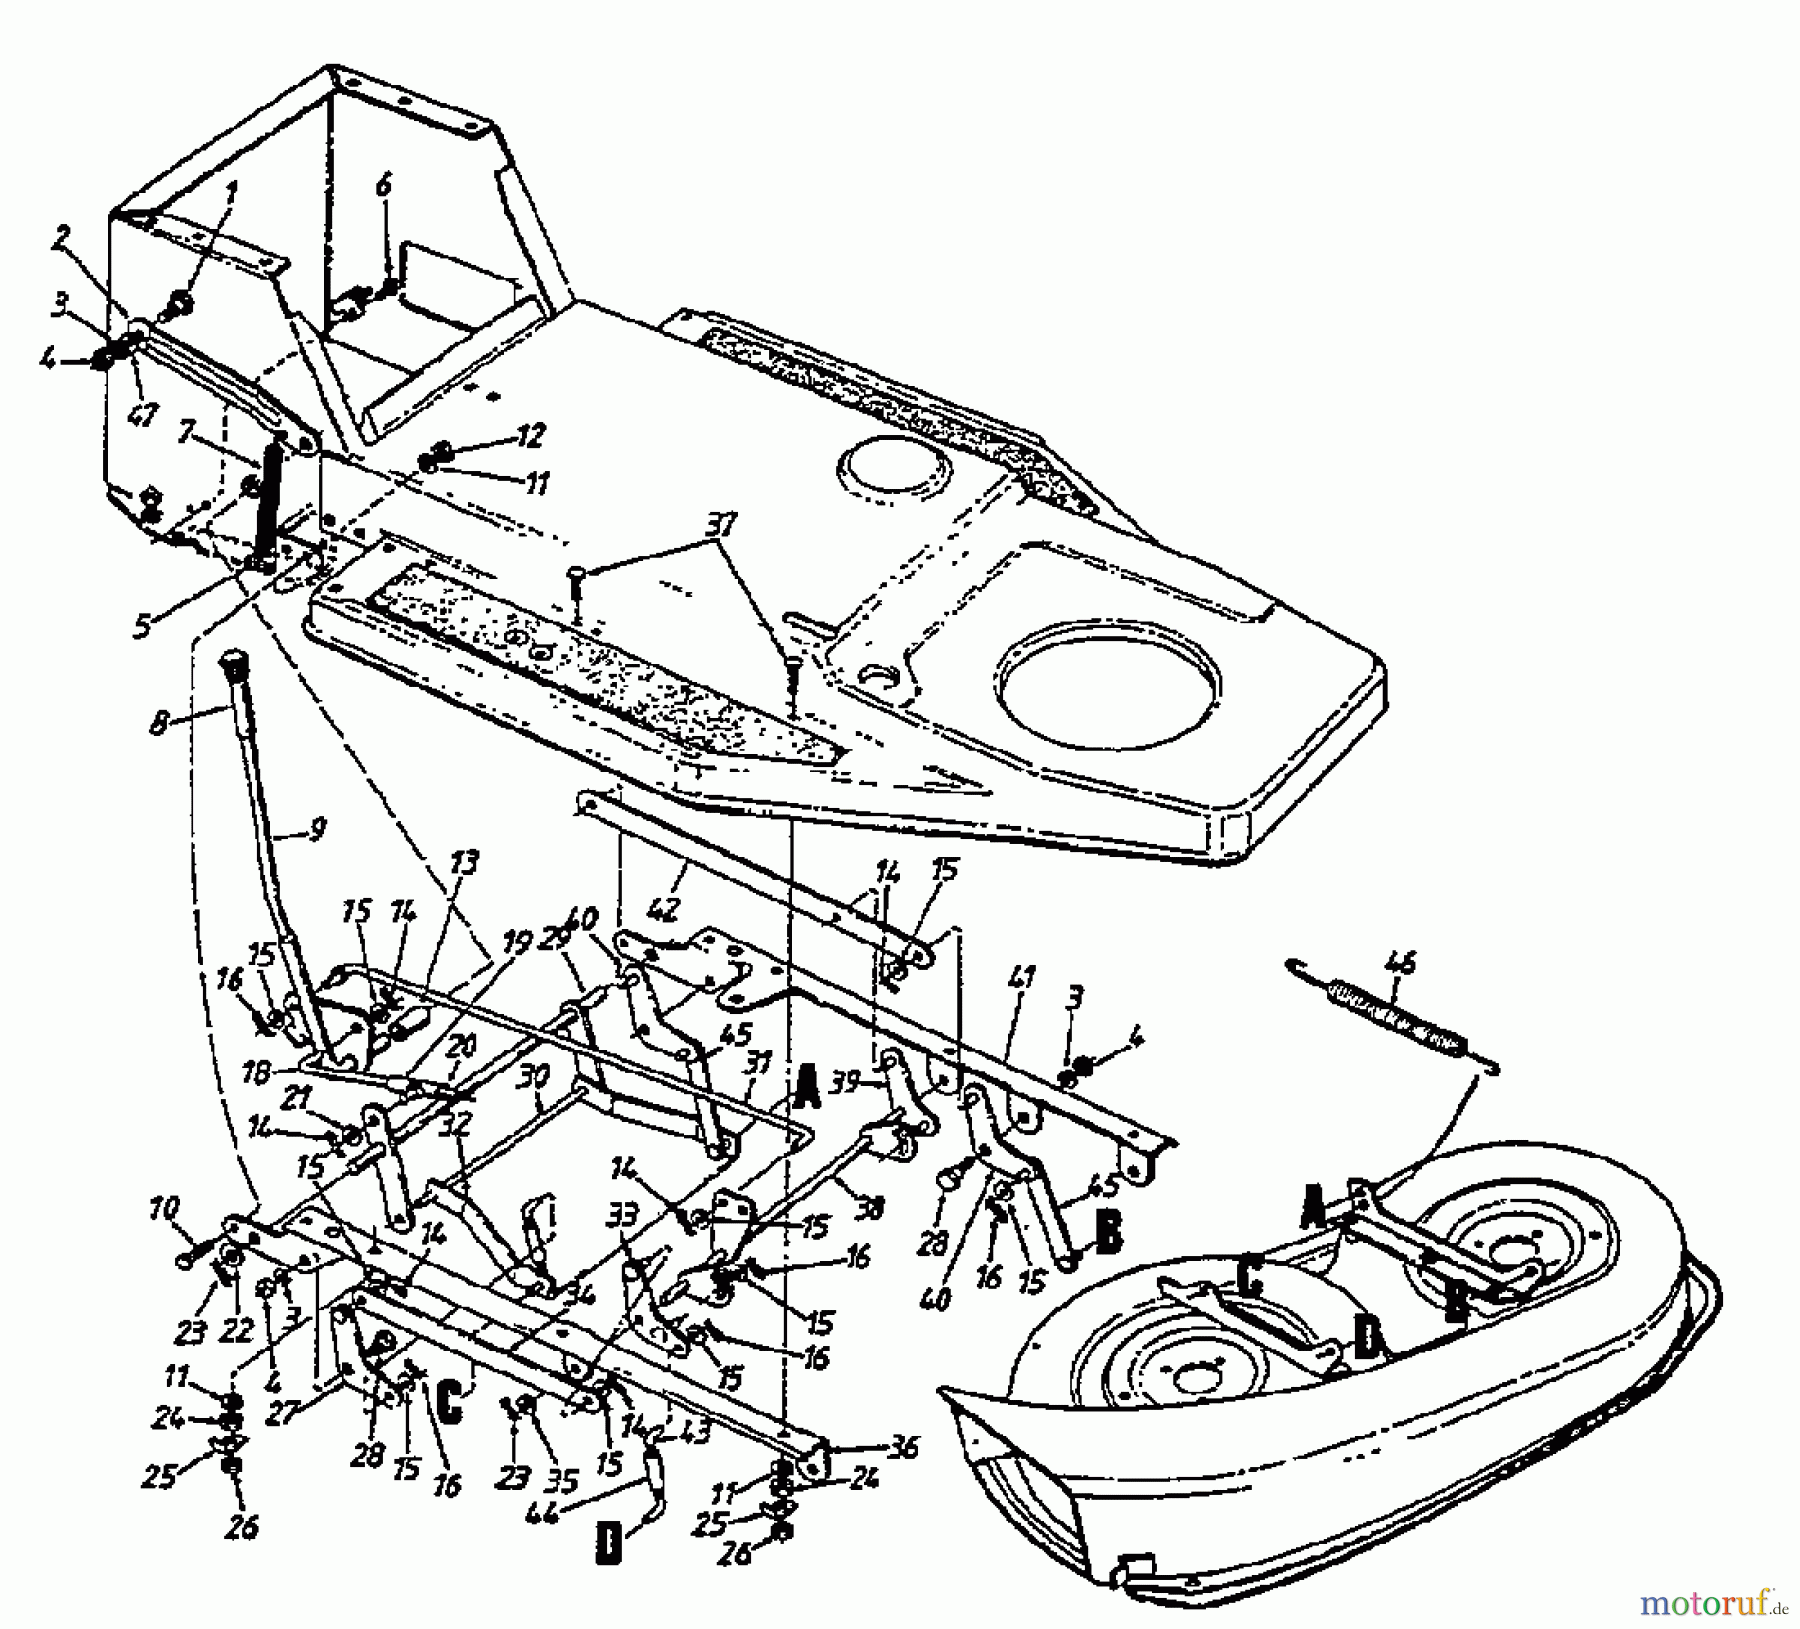  Bauhaus Lawn tractors Gardol Topcut 12/91 133I471E646  (1993) Deck lift